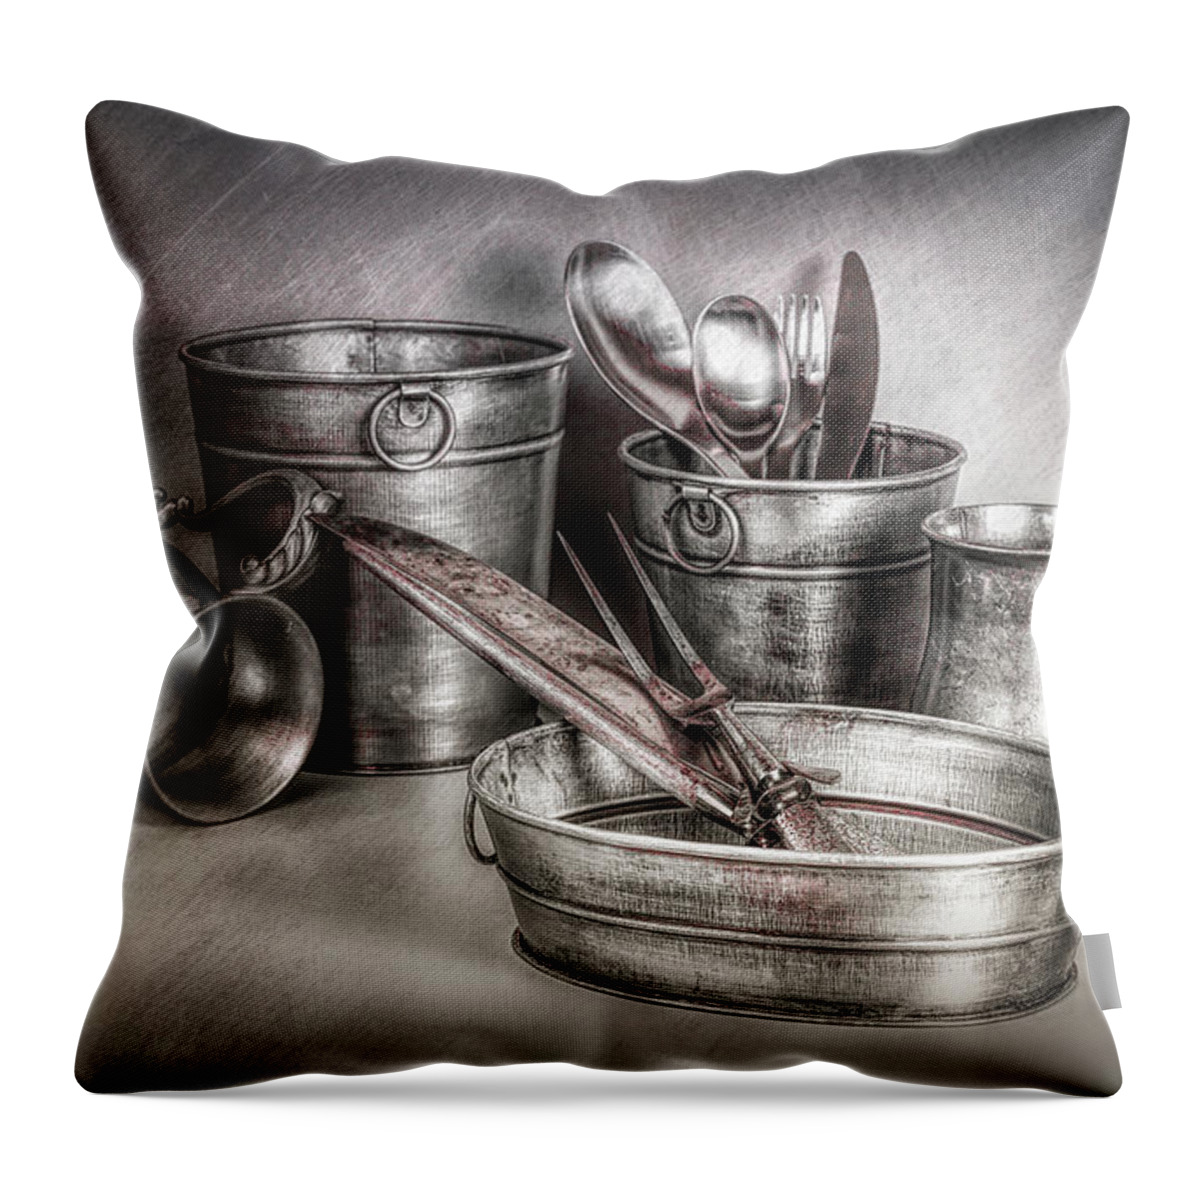 Art Throw Pillow featuring the photograph Metalware Still Life by Tom Mc Nemar